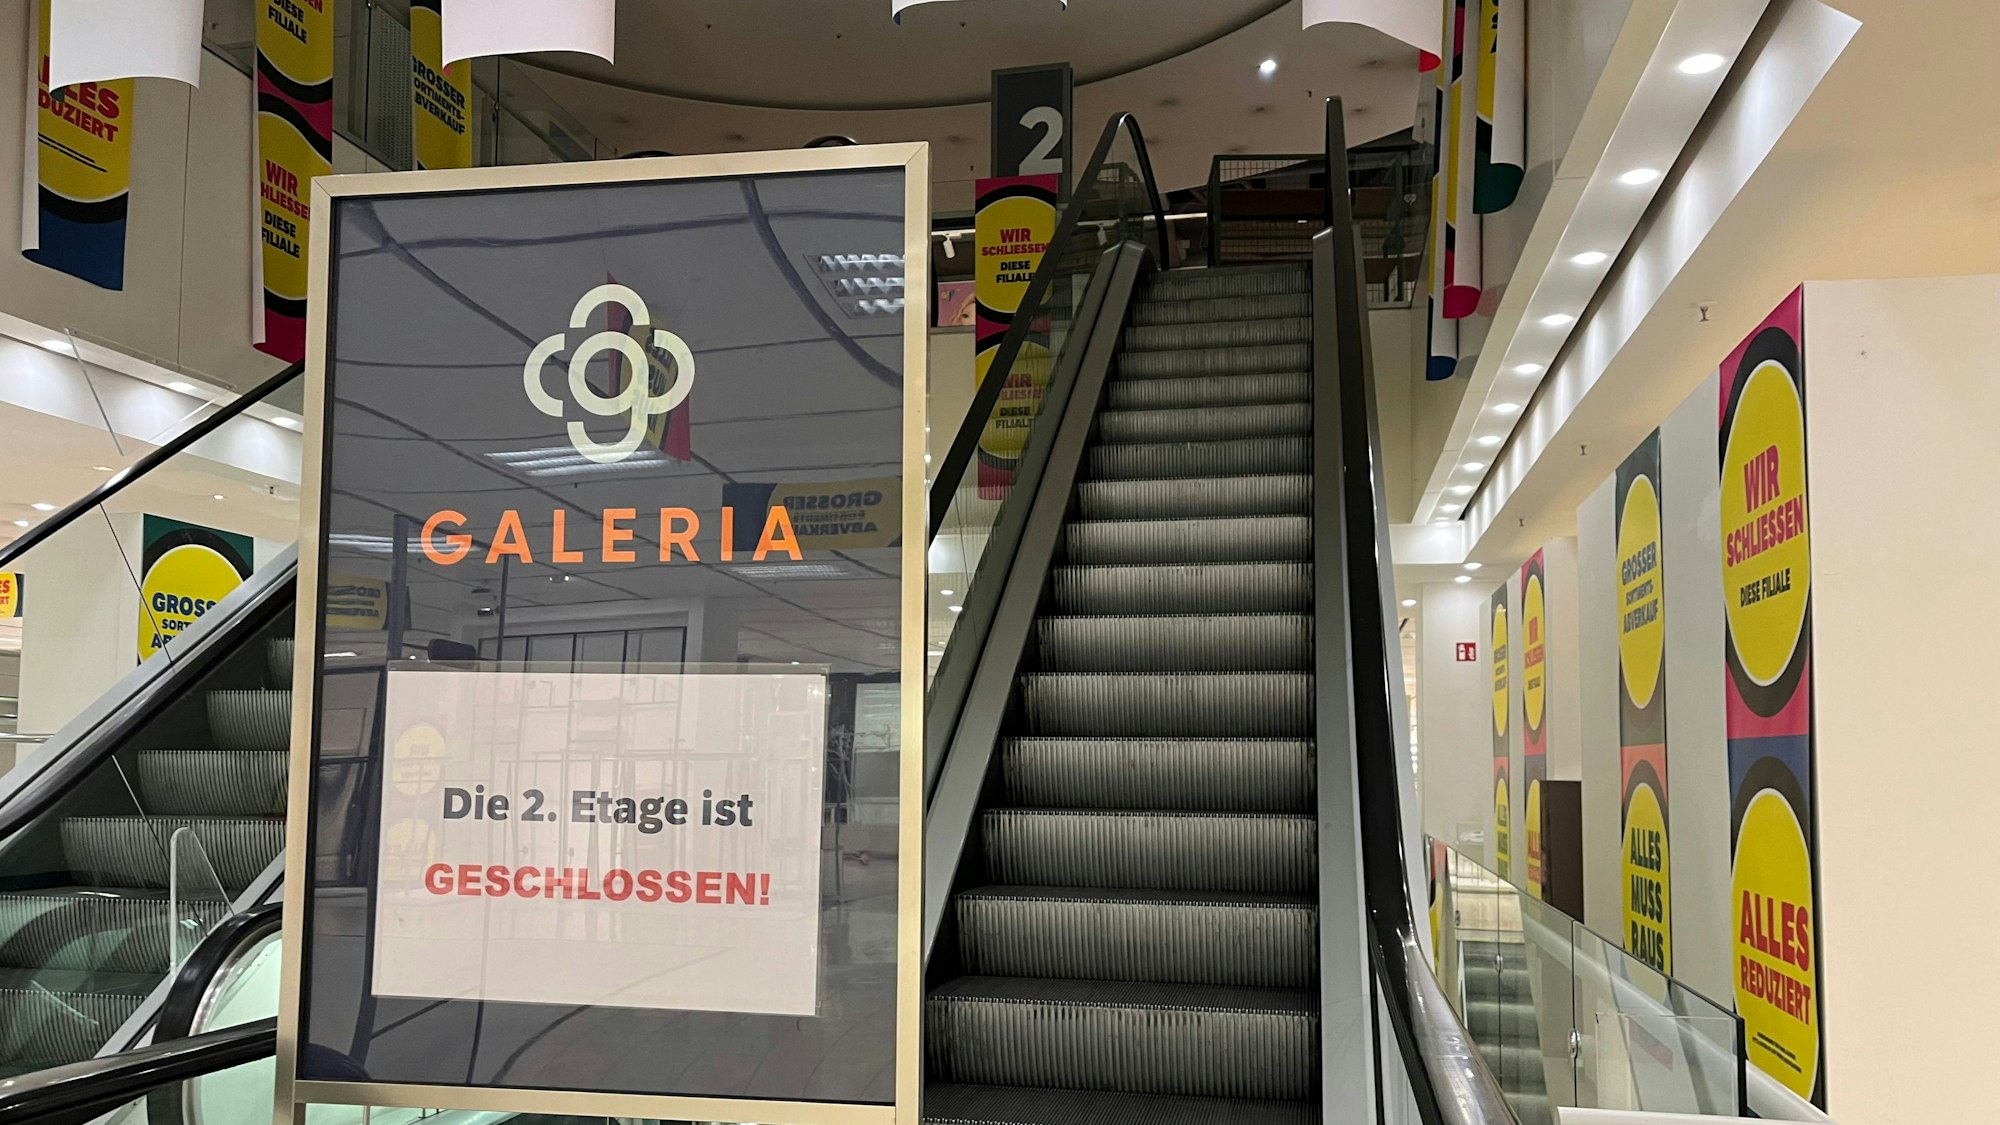 Schild "Die 2. Etage ist geschlossen" vor einer Rolltreppe